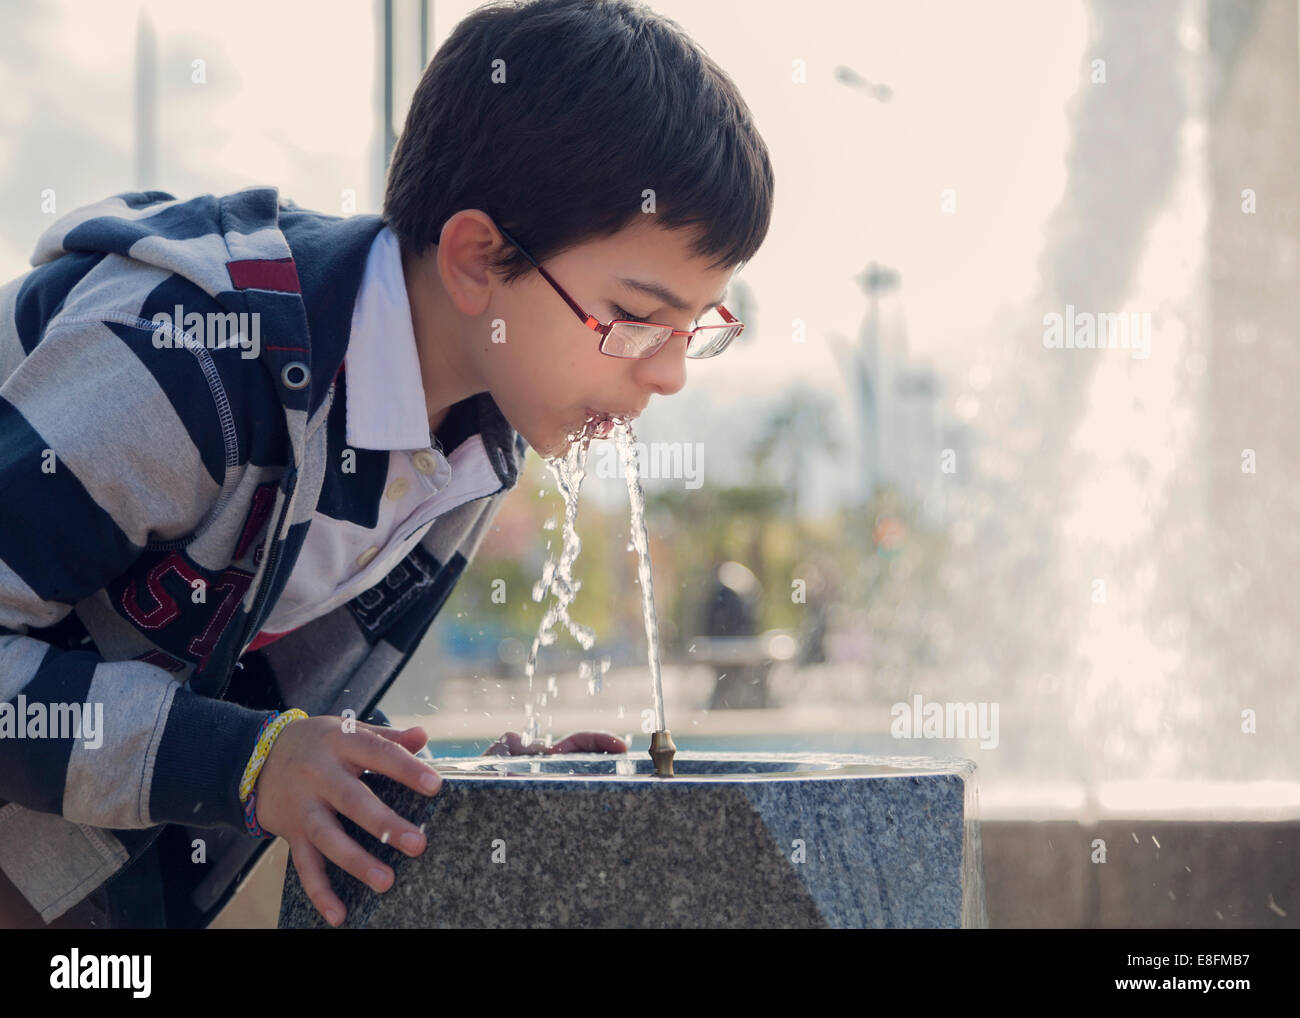 Spagna, Cordoba, ragazzo (12-13) acqua potabile dalla fontana nel parco Foto Stock